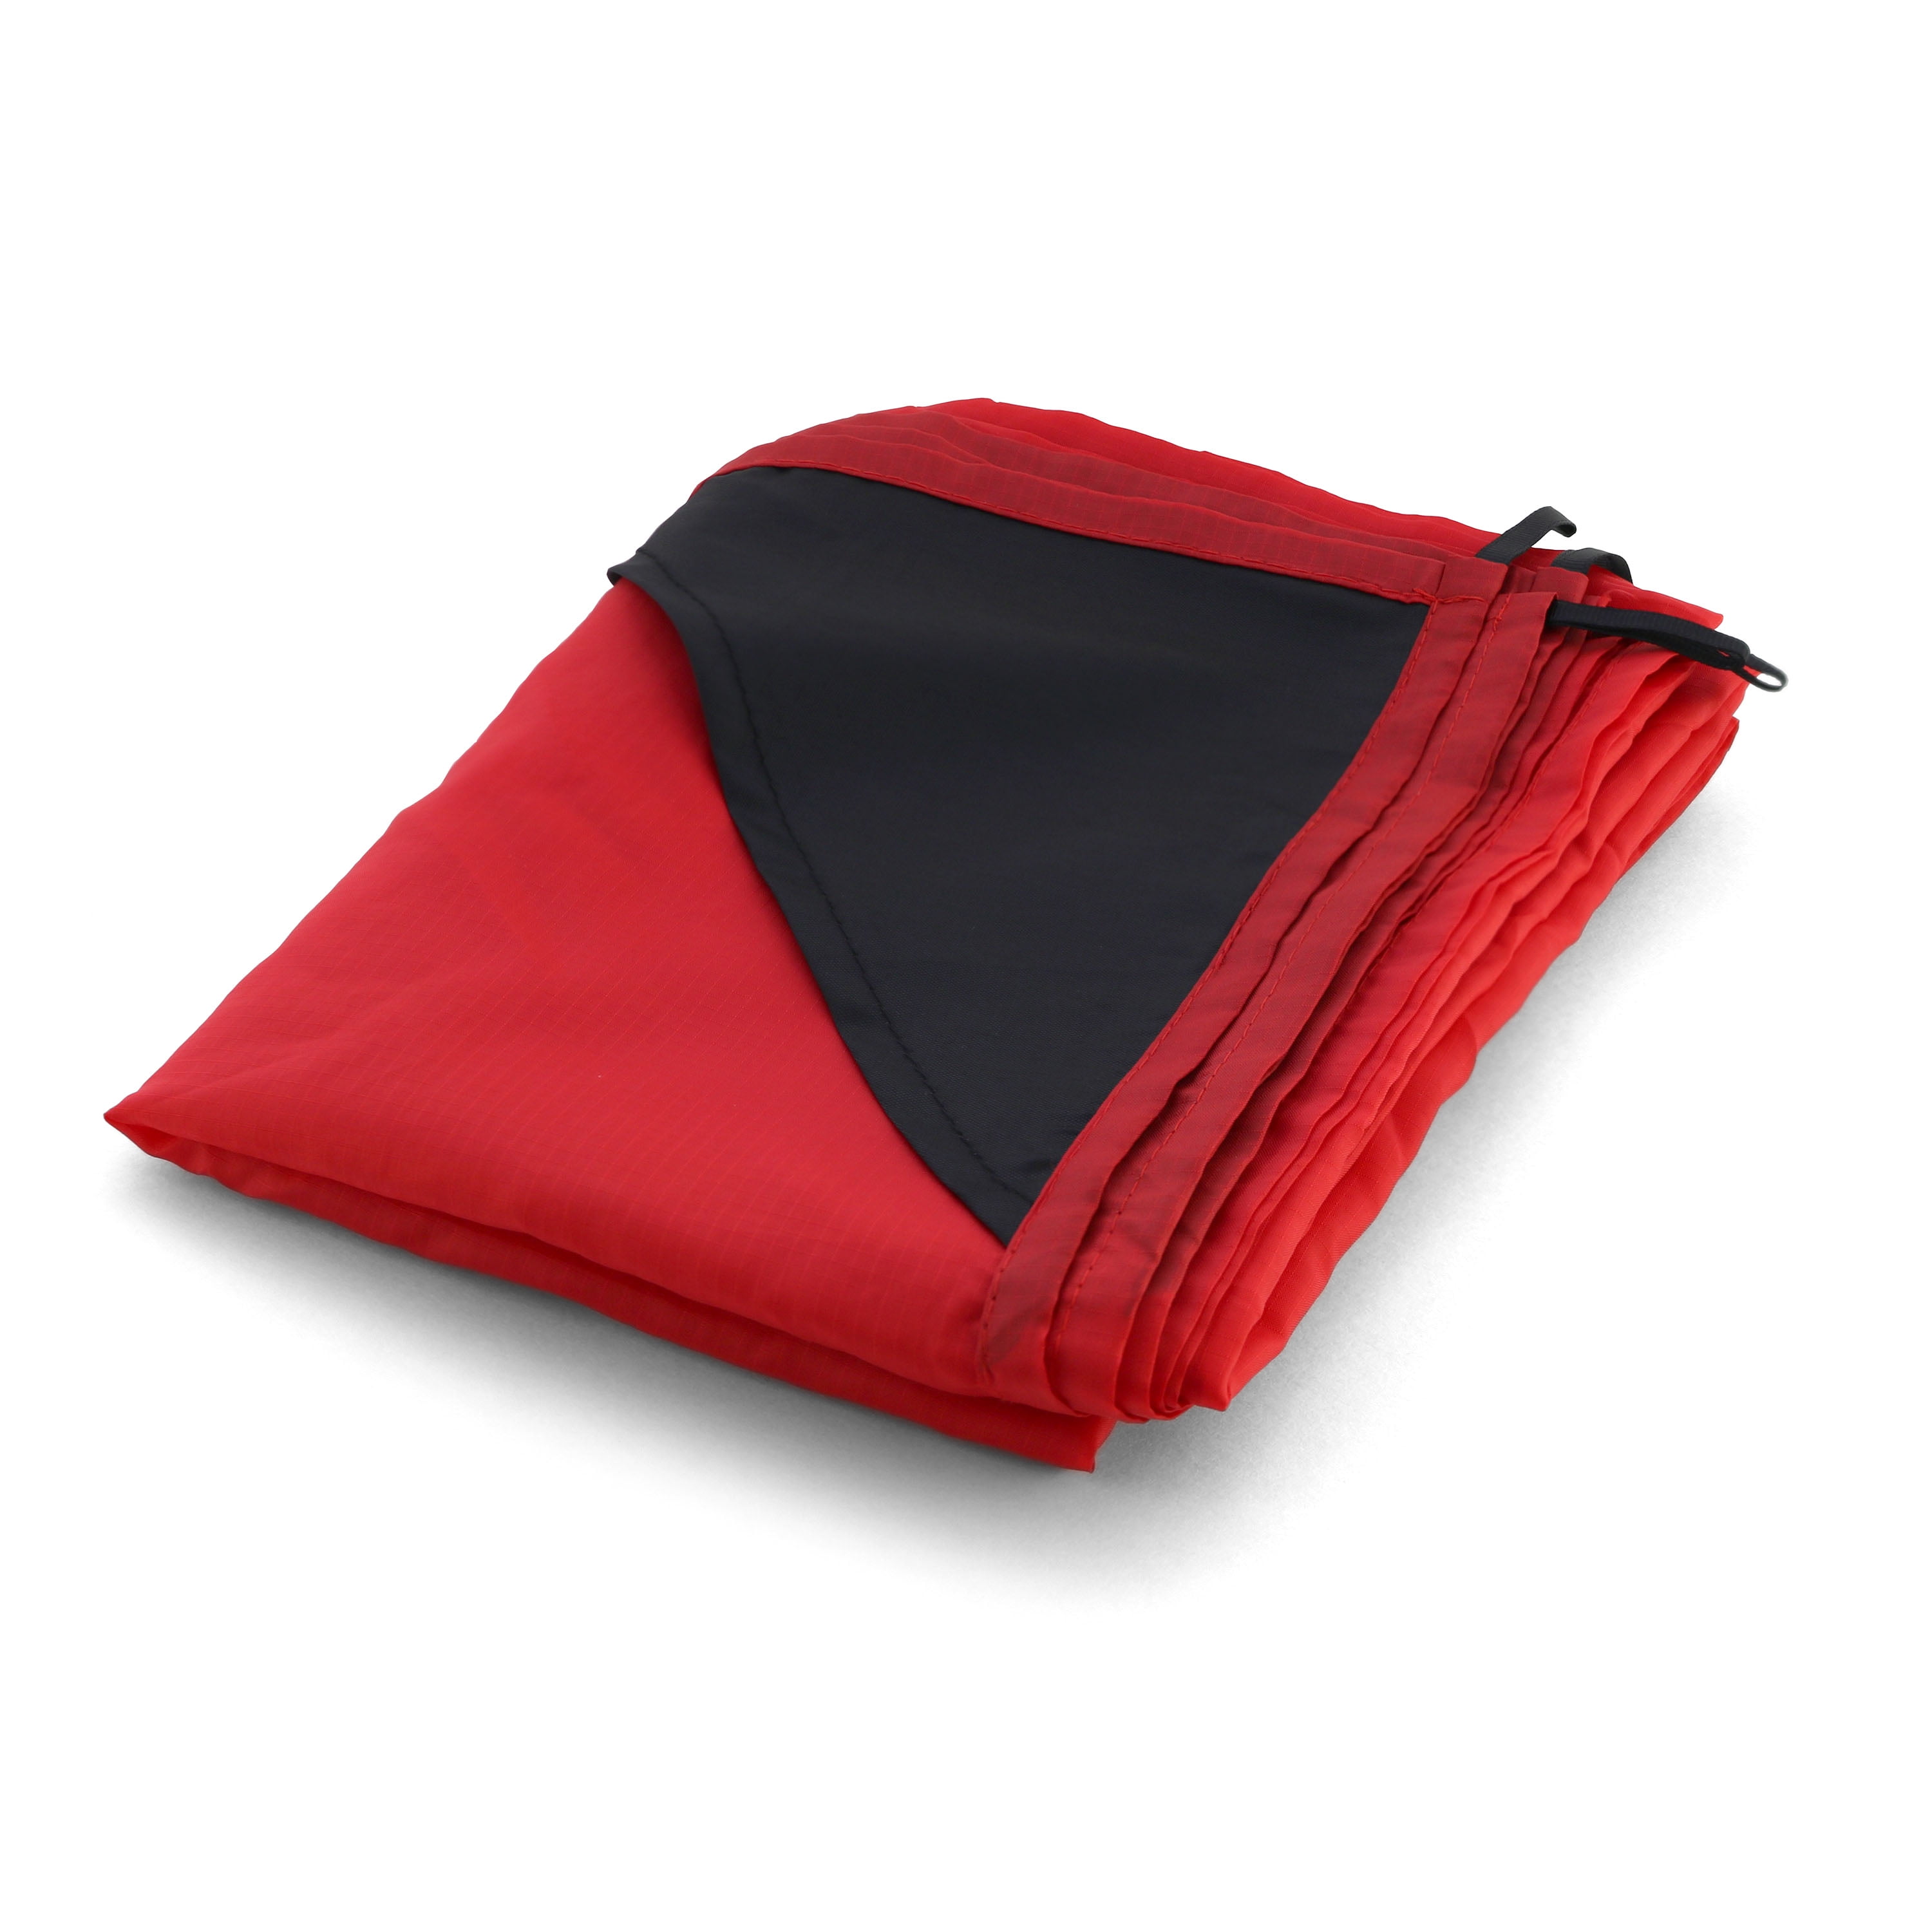 Aluminum Foil Sheet Hiking Travel Blanket Thermal Camping Picnic Mat Waterproof 